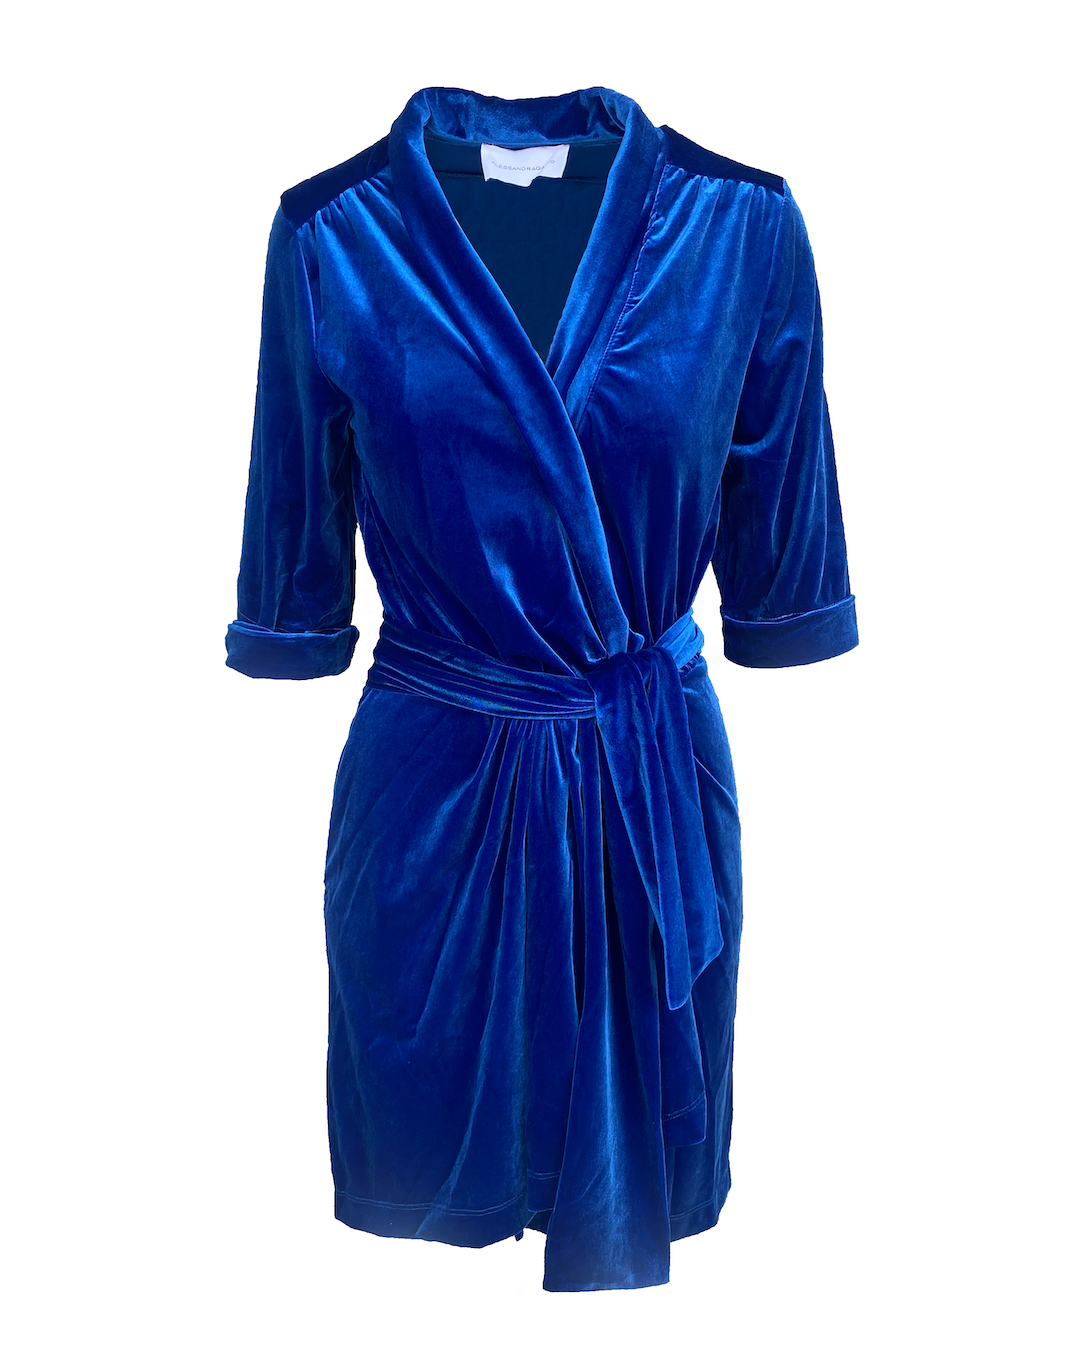 GINEVRA MINI - short bluette chenille dress